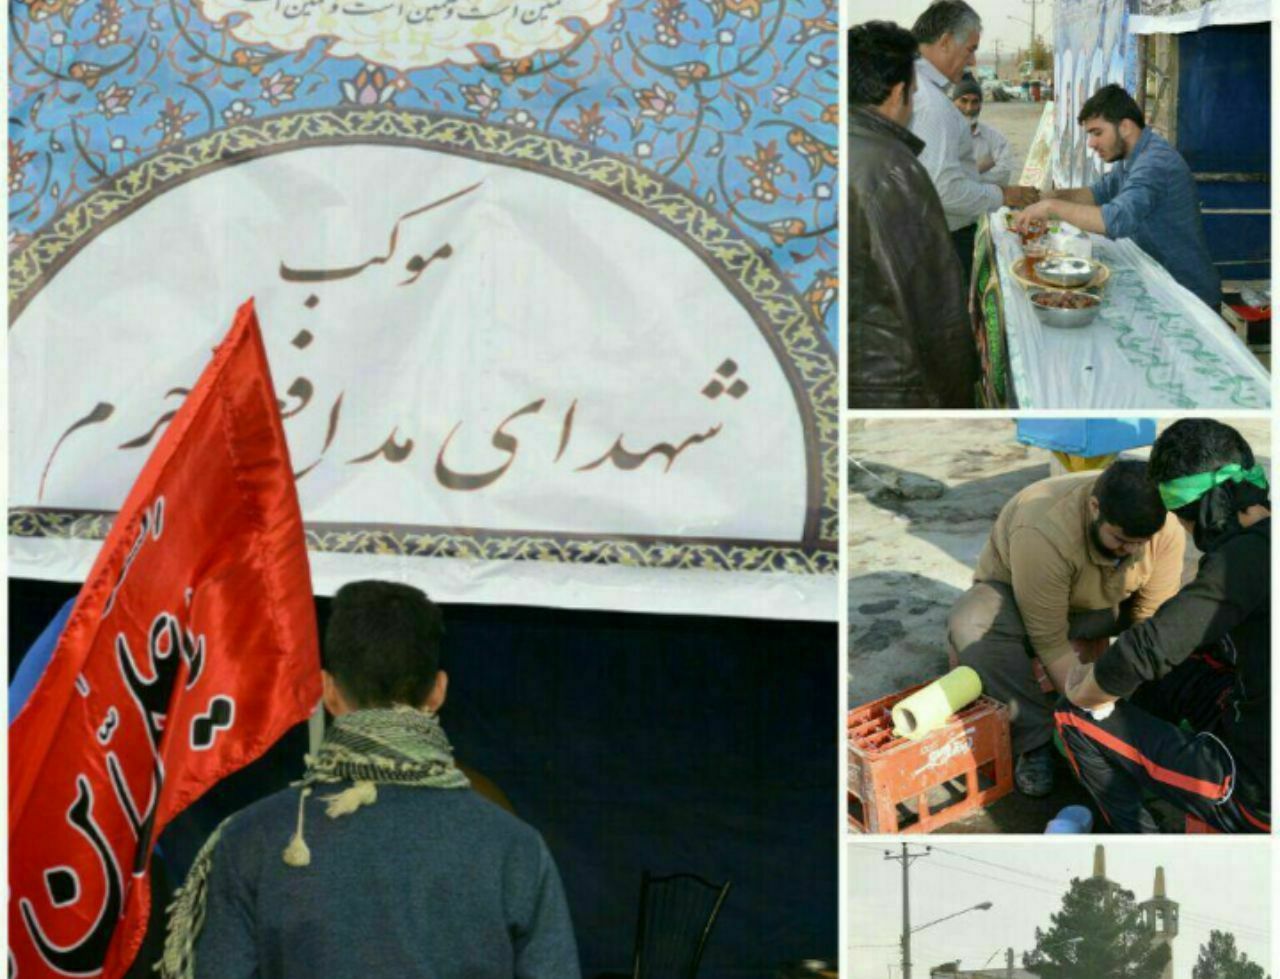 خدمات رسانی جوانان جهادگر گیلانی به زائران رضوی در جاده نیشابور ـ مشهد + تصاویر